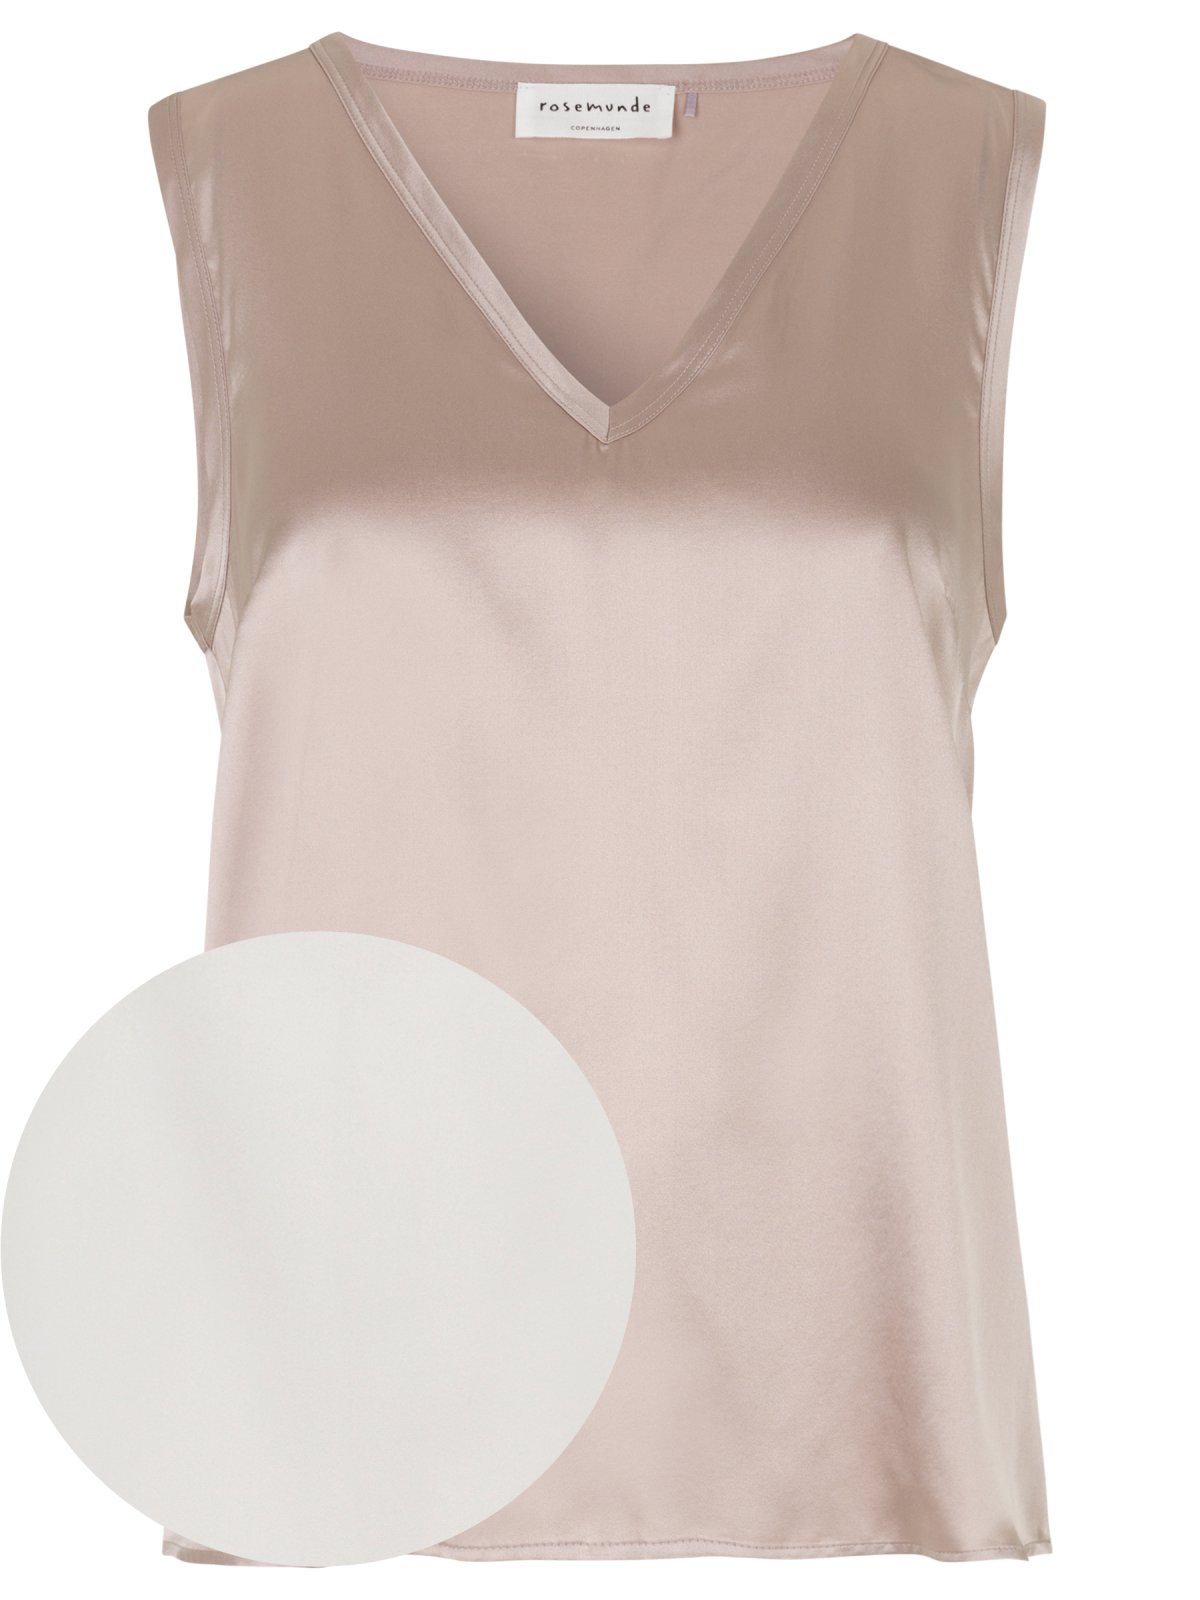 19285円 ◆高品質 Rosemunde 衣服 ファッション トップス Long sleeved top - new white